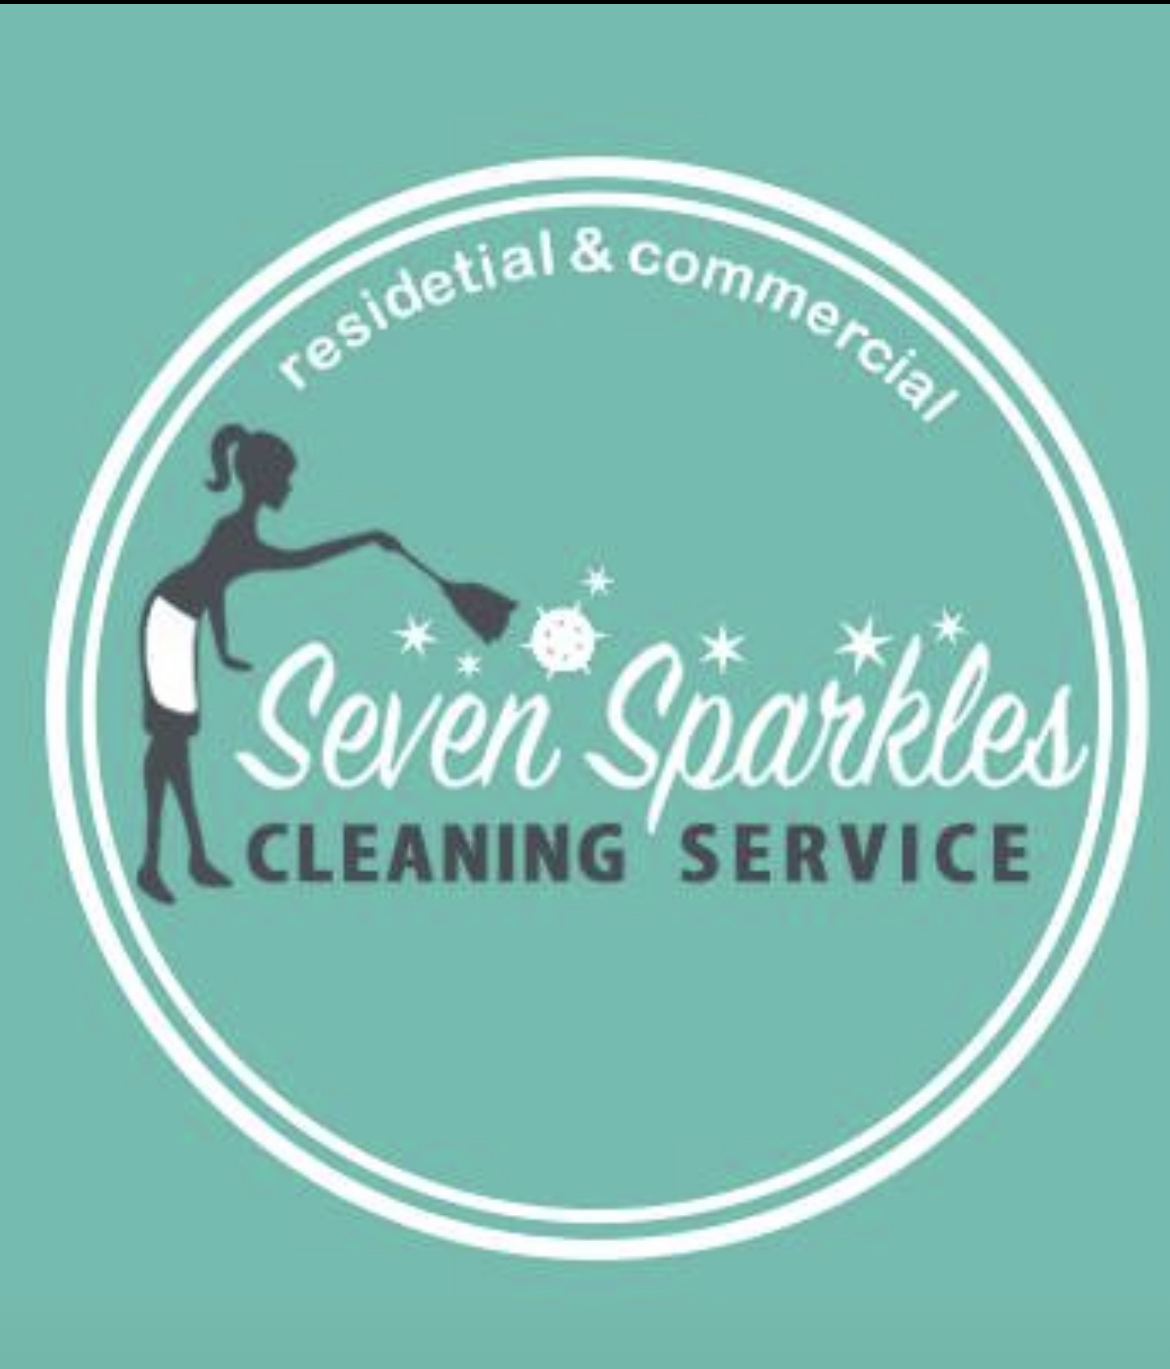 ハウスクリーナ大募集 - Seven Sparkles Cleaning Service イメージ画像